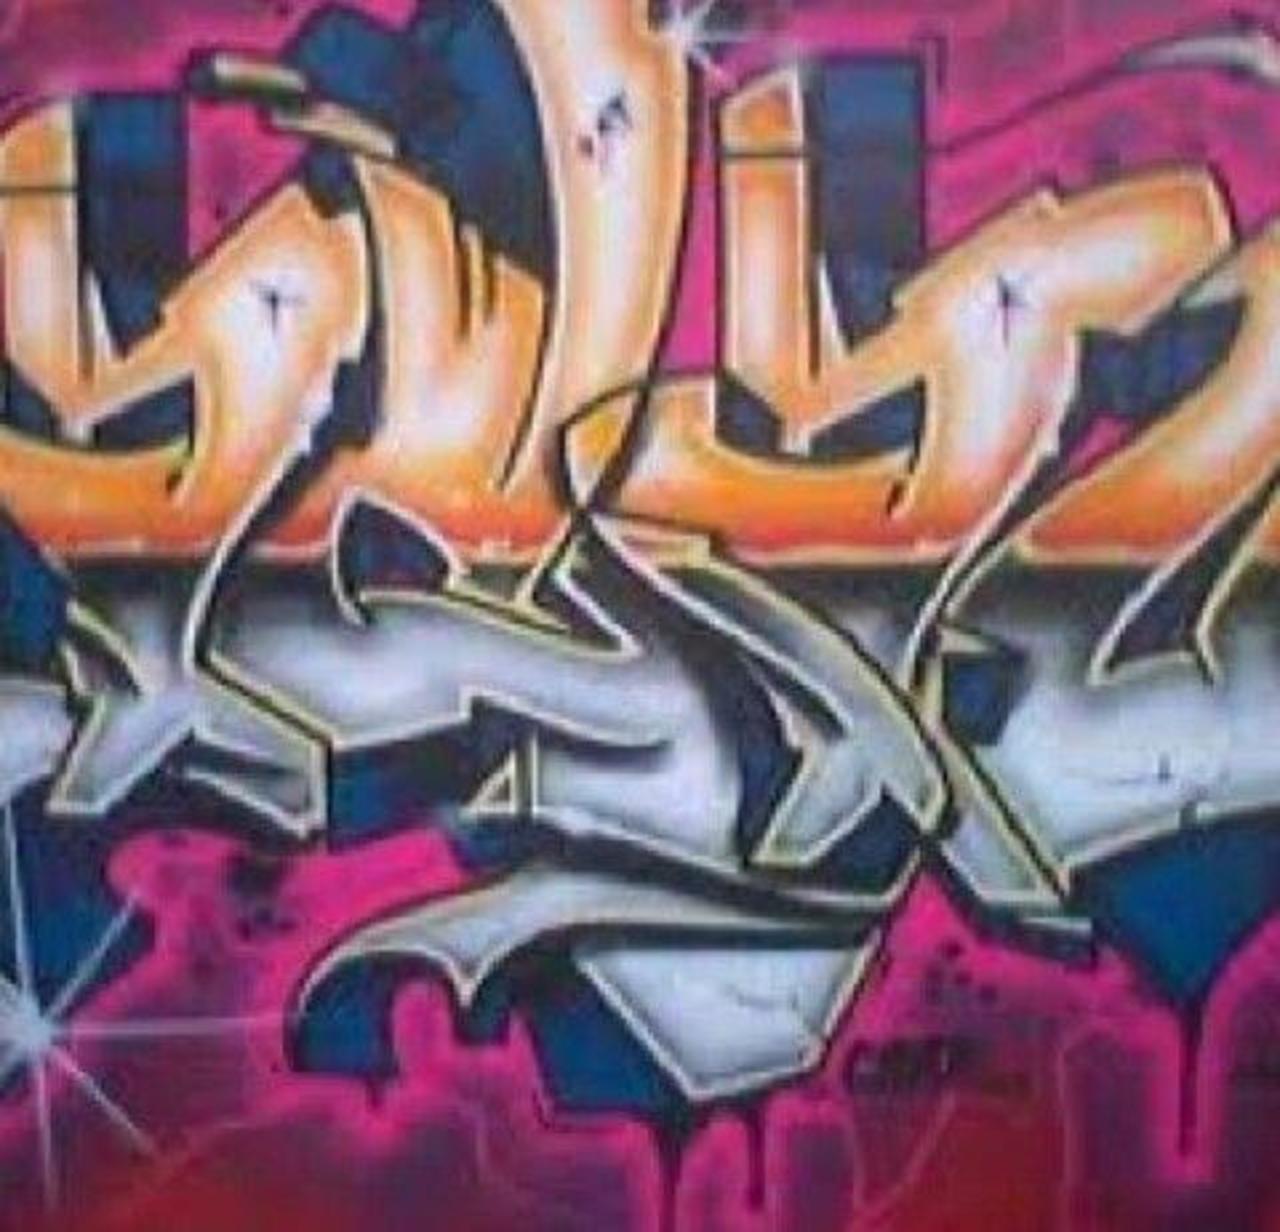 Graffiti https://twib.in/l/oajjGykRgbL via @twibbleio #streetart #art #graffiti http://t.co/sP7ok4s4cR